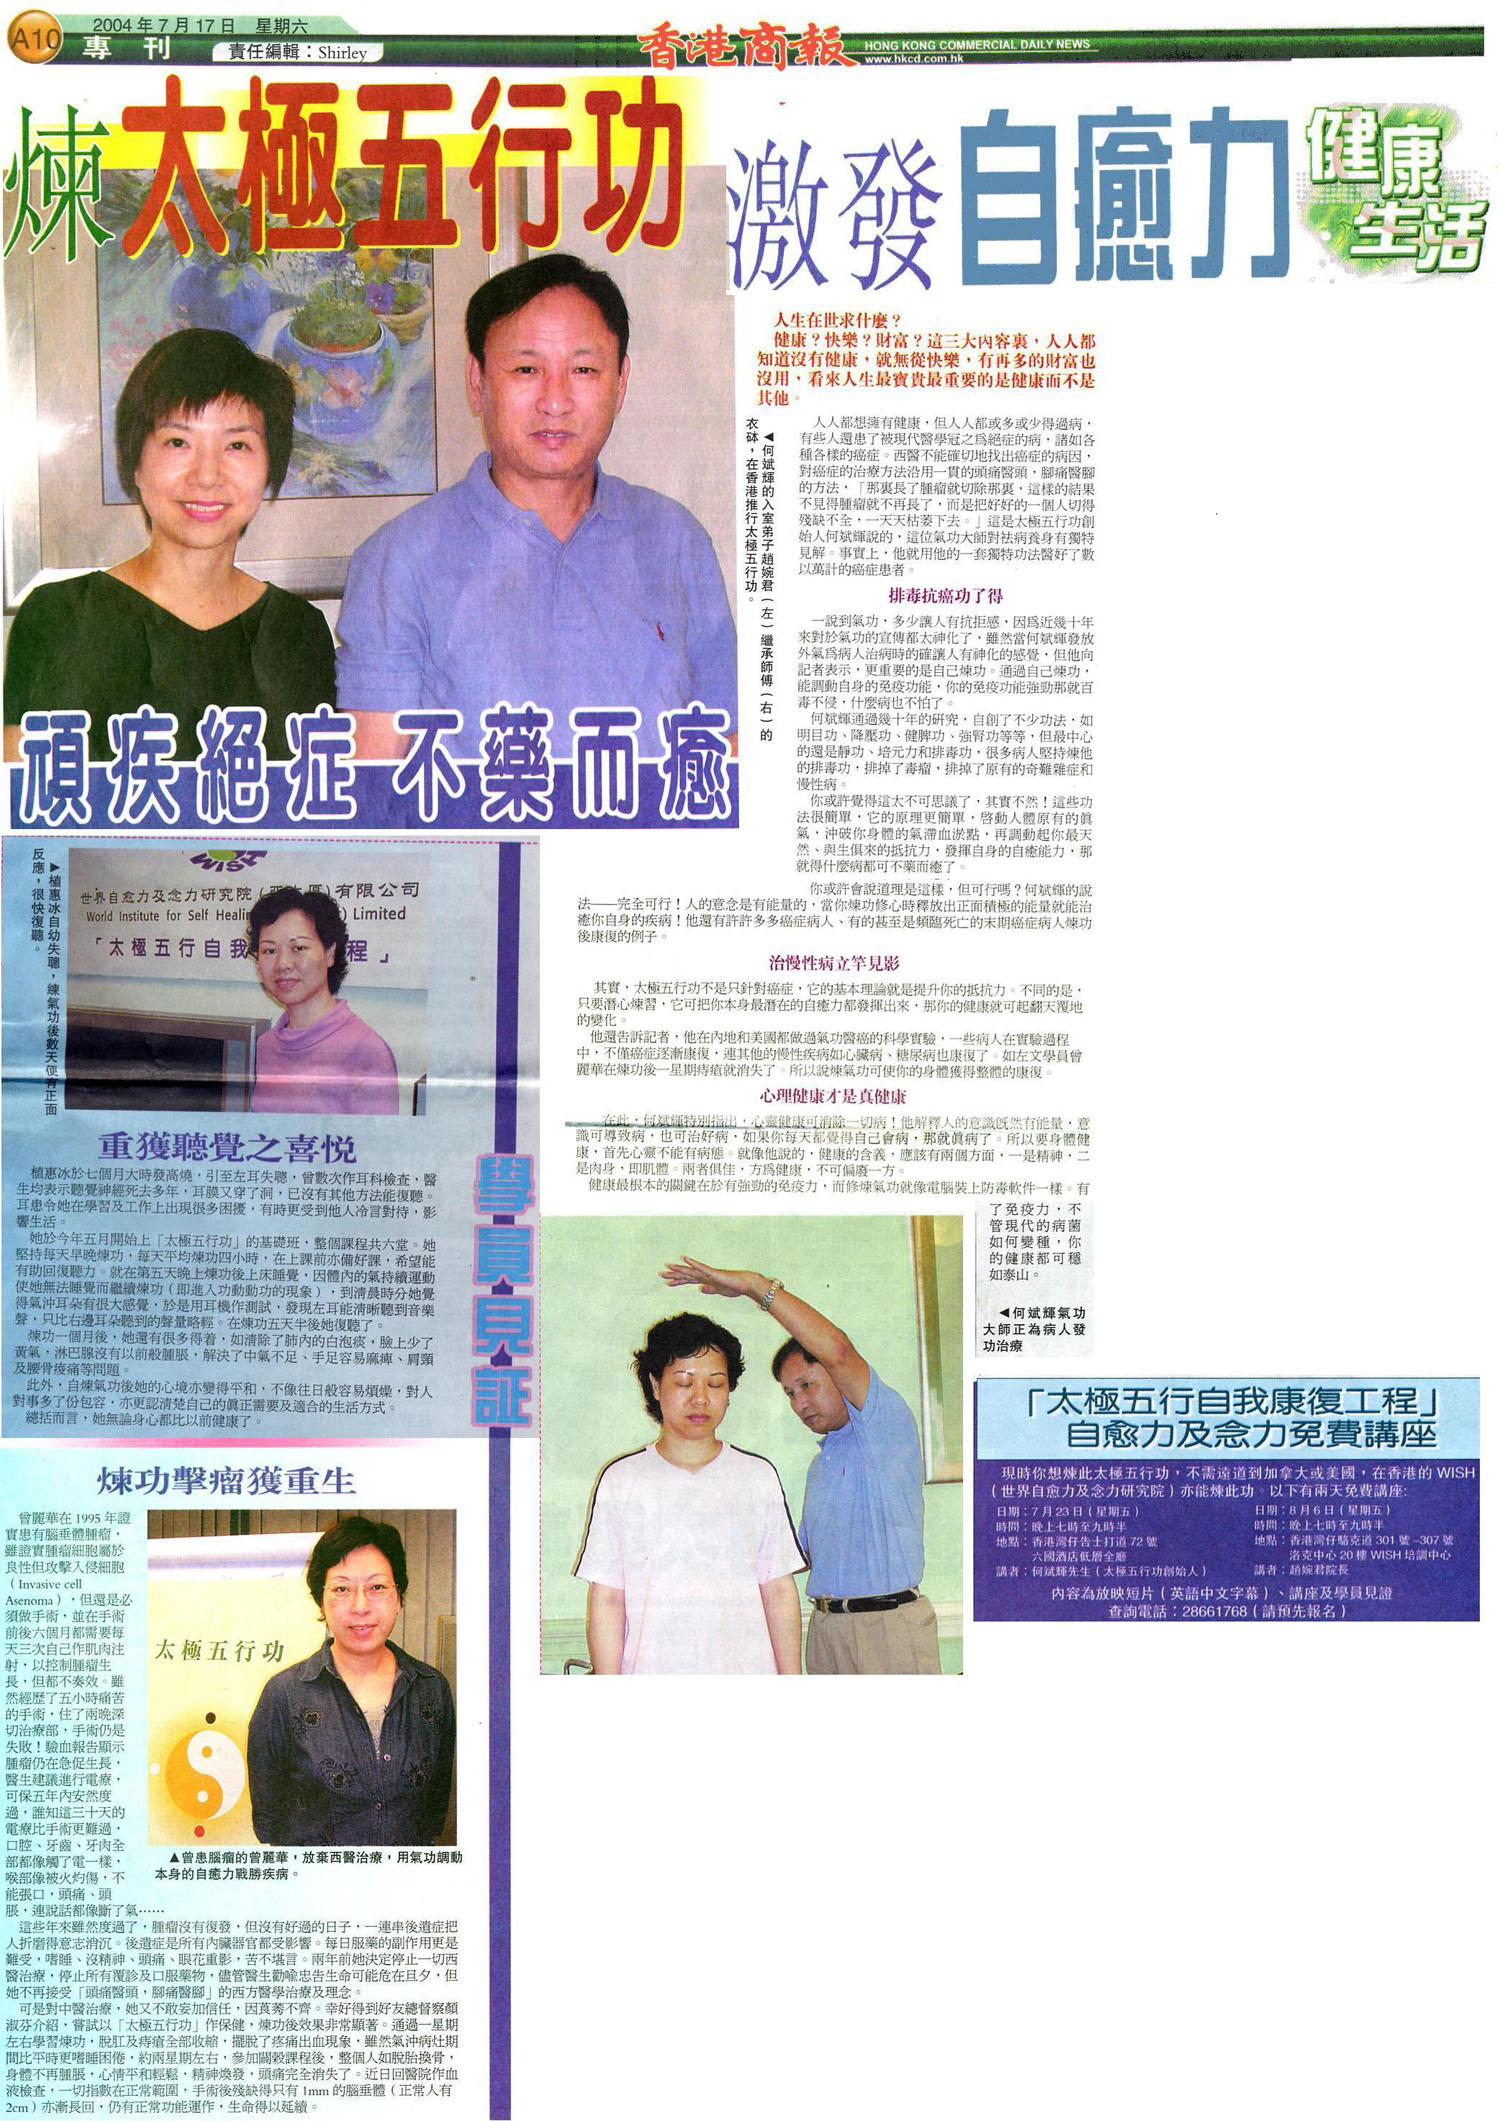 香港商報 : 2004年7月17日 (煉太極五行功激發自癒力)